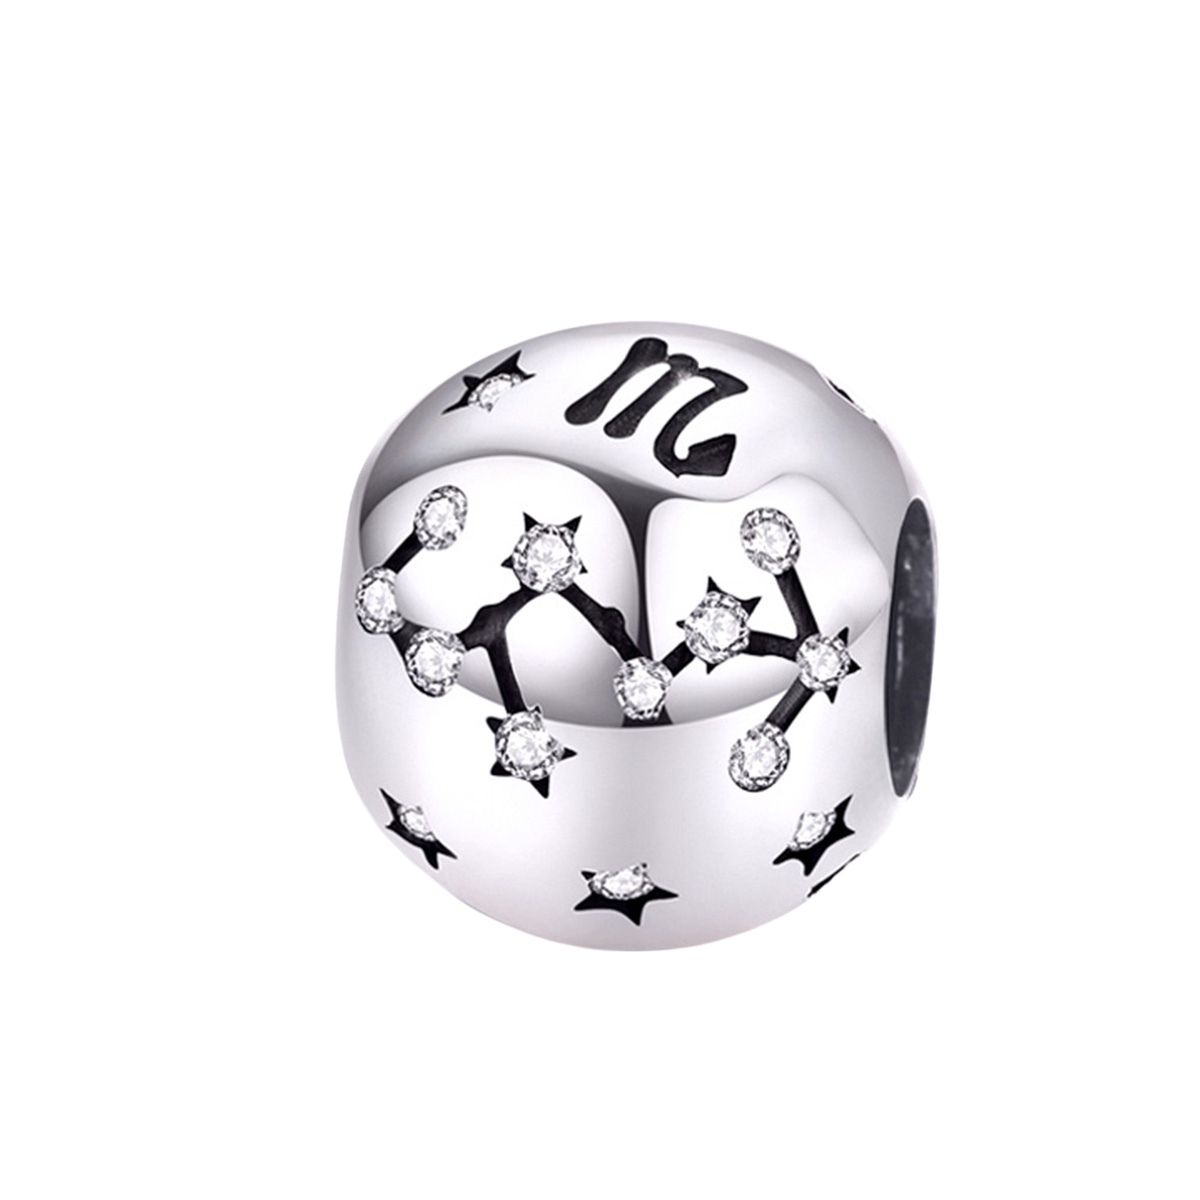 Sterrenbeeld schorpioen bedel zirkonia  zodiac scorpio bead  Zilverana  geschikt voor Biagi , Pandora , Trollbeads armband  925 zilver